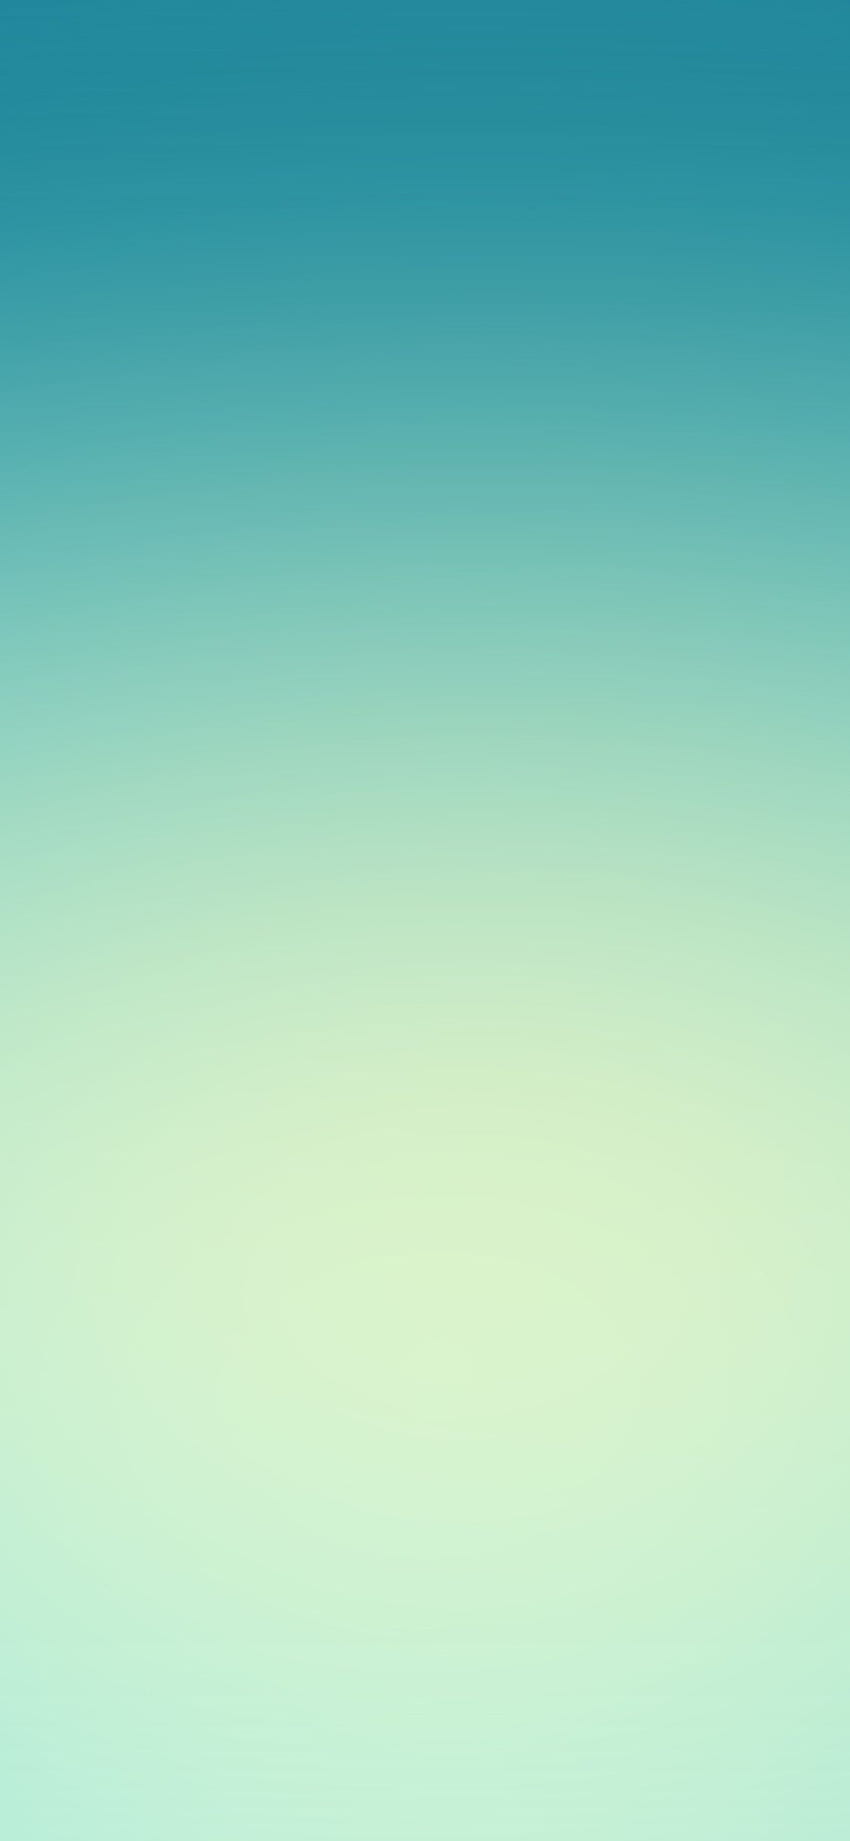 iPhone X . light green blue sky gradation blur HD phone wallpaper